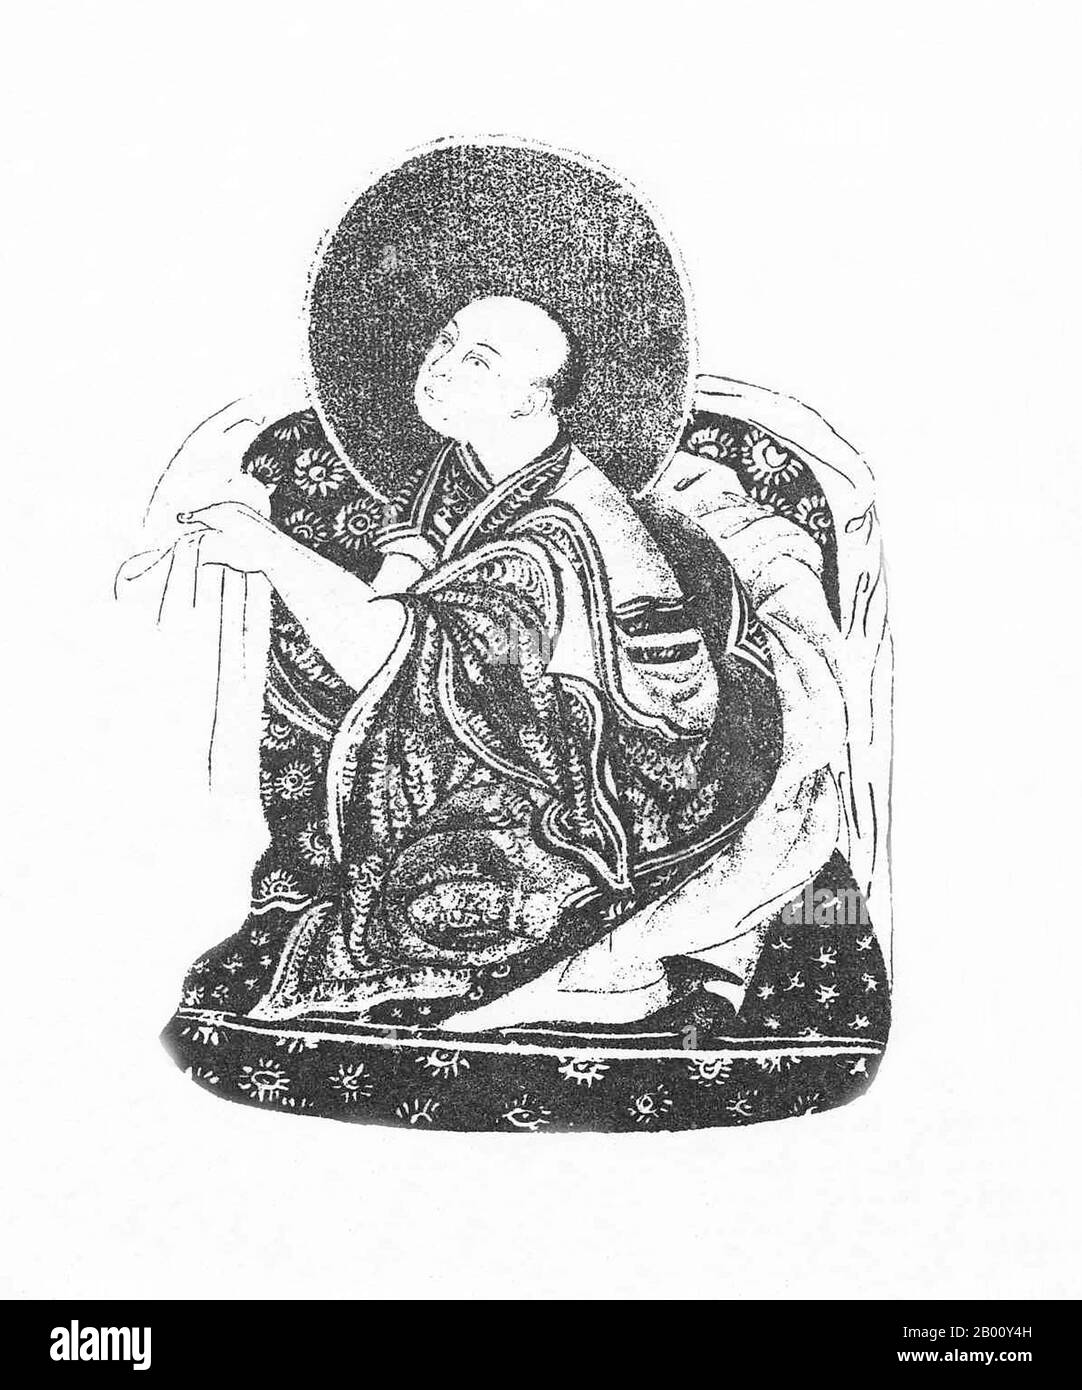 Chine/Tibet: Khedrup Gelek Pelzang, 1er Panchen Lama (1385-1438), c. 1882. Khedrup Gelek Pelzang (1385–1438), mieux connu sous le nom de Khedrup Je, le 1er Panchen Lama, était l'un des principaux disciples du Lama Tsongkhapa (fondateur de la tradition Gelug du bouddhisme tibétain). Banque D'Images